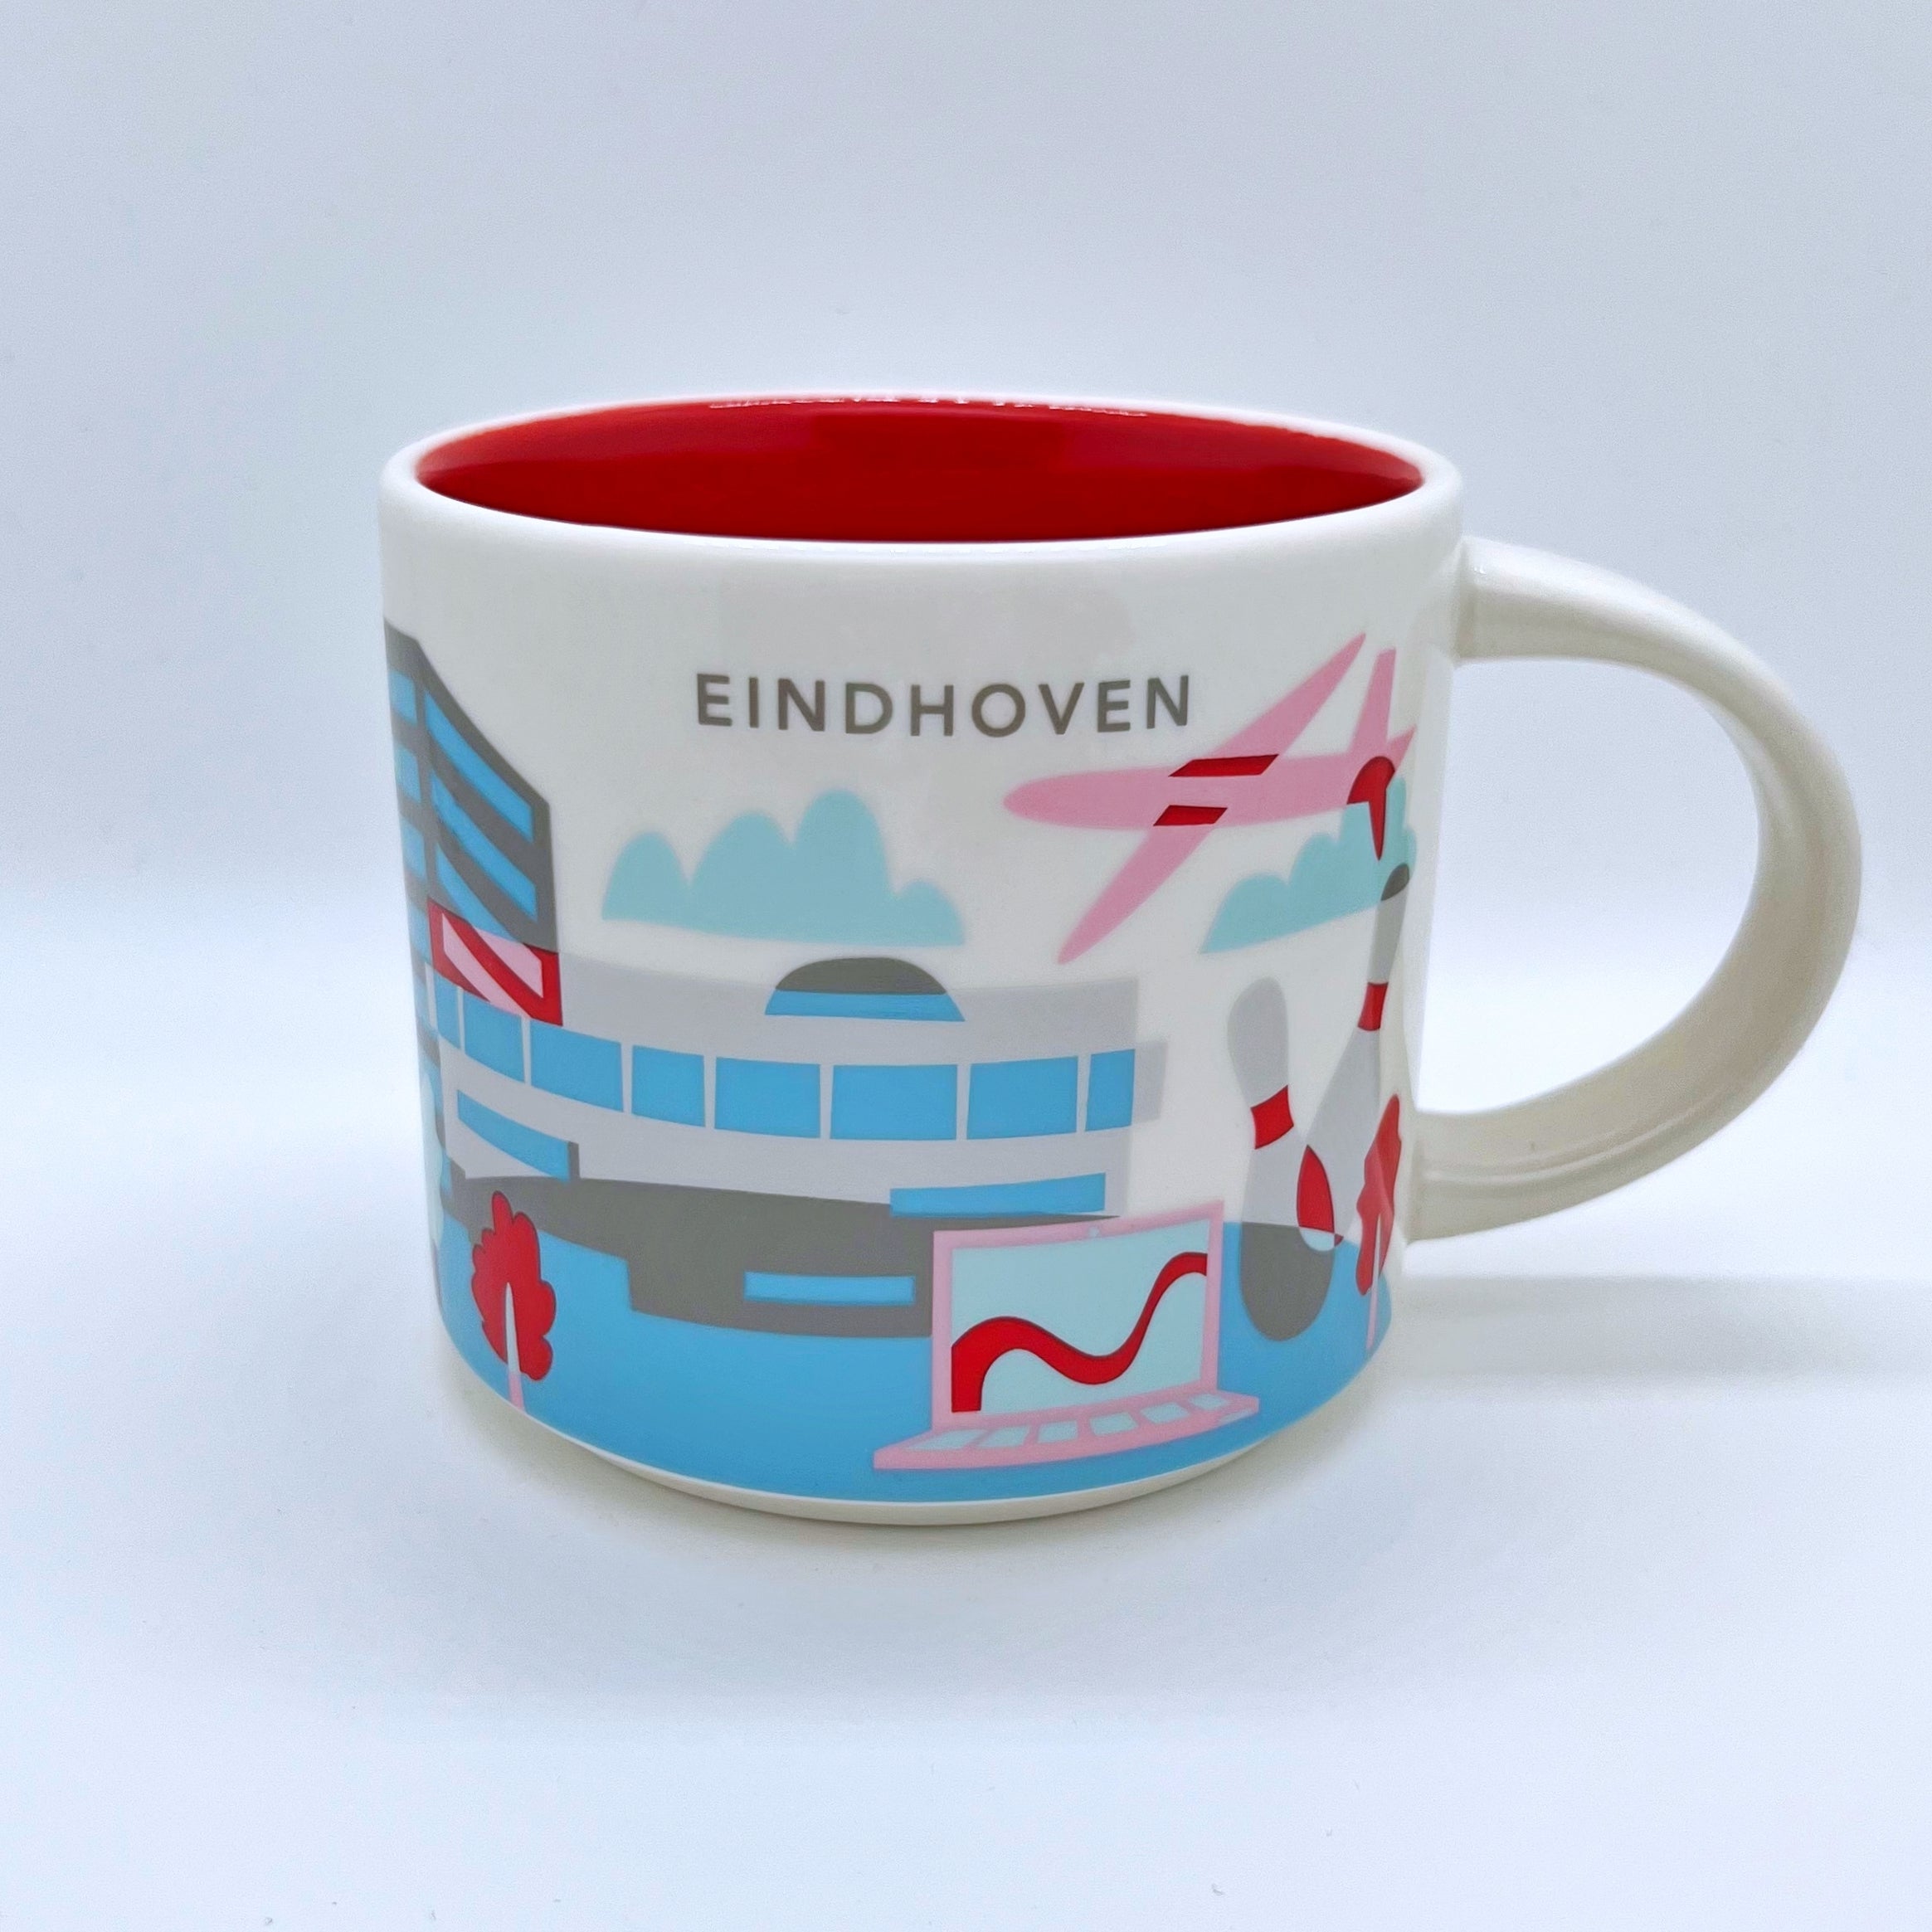 Kaffee Tee und Cappuccino Tasse von Starbucks mit gemalten Bildern aus der Stadt Eindhoven